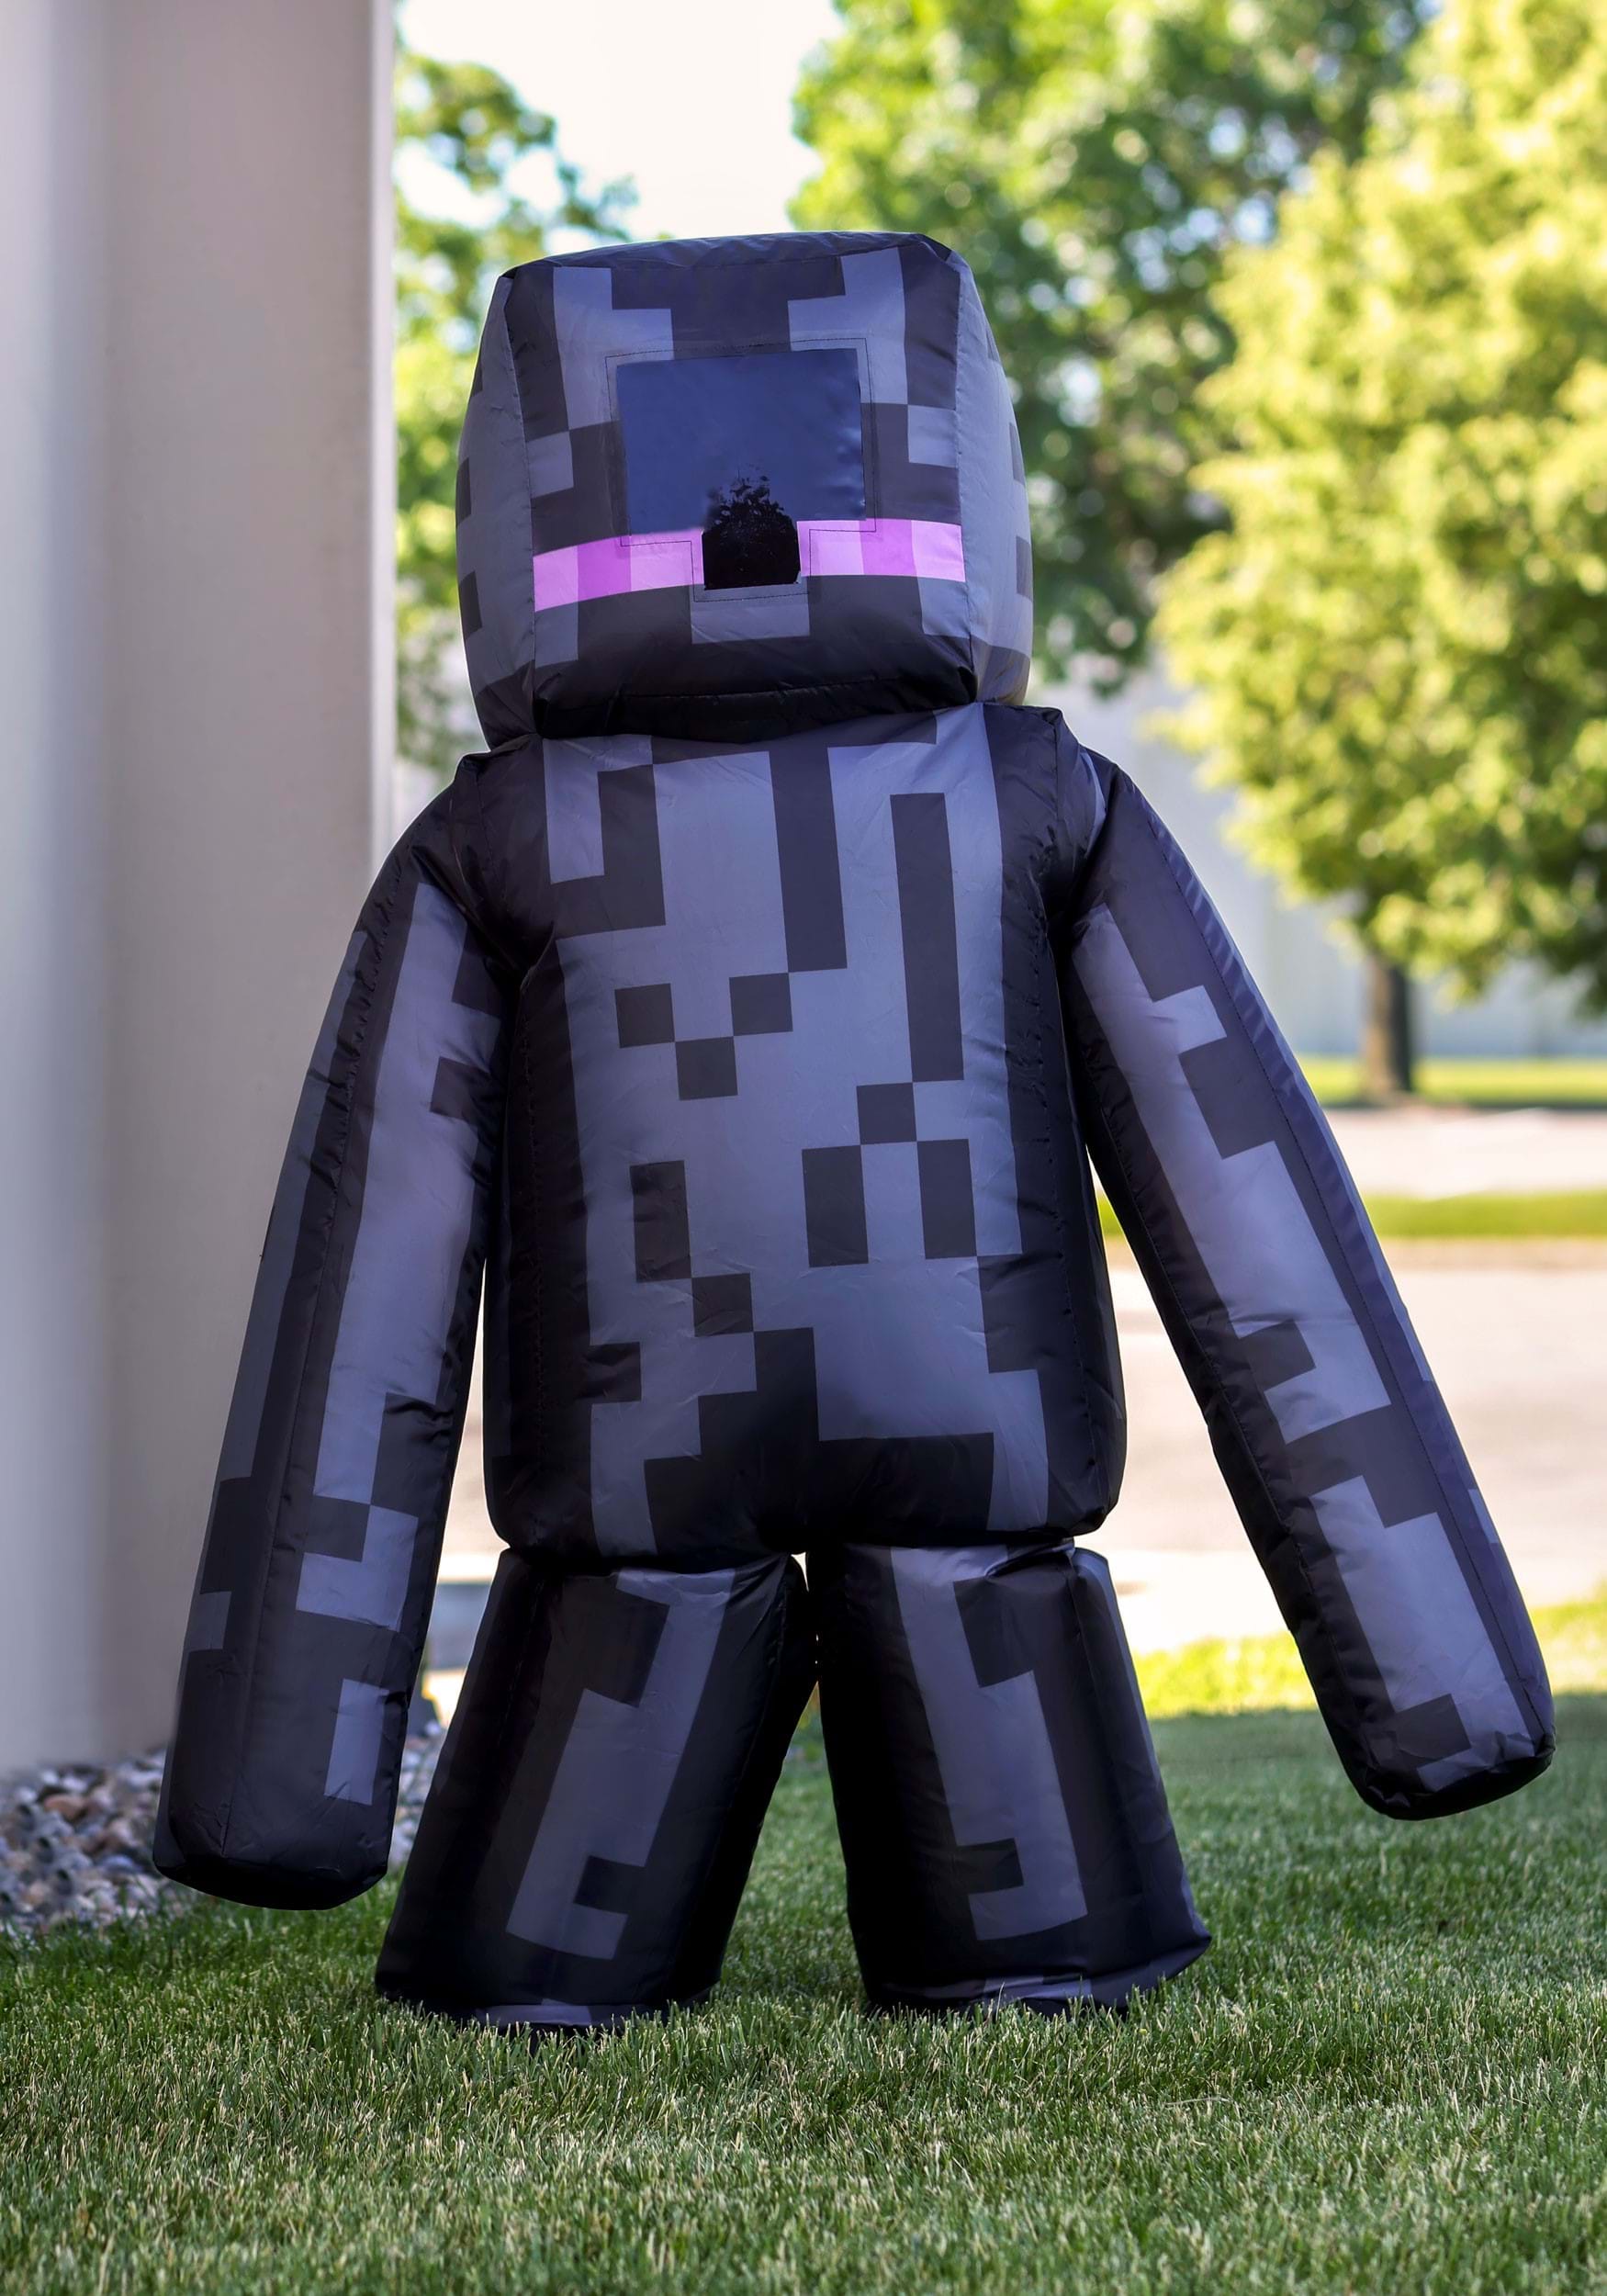 Kid’s Minecraft Inflatable Enderman Costume